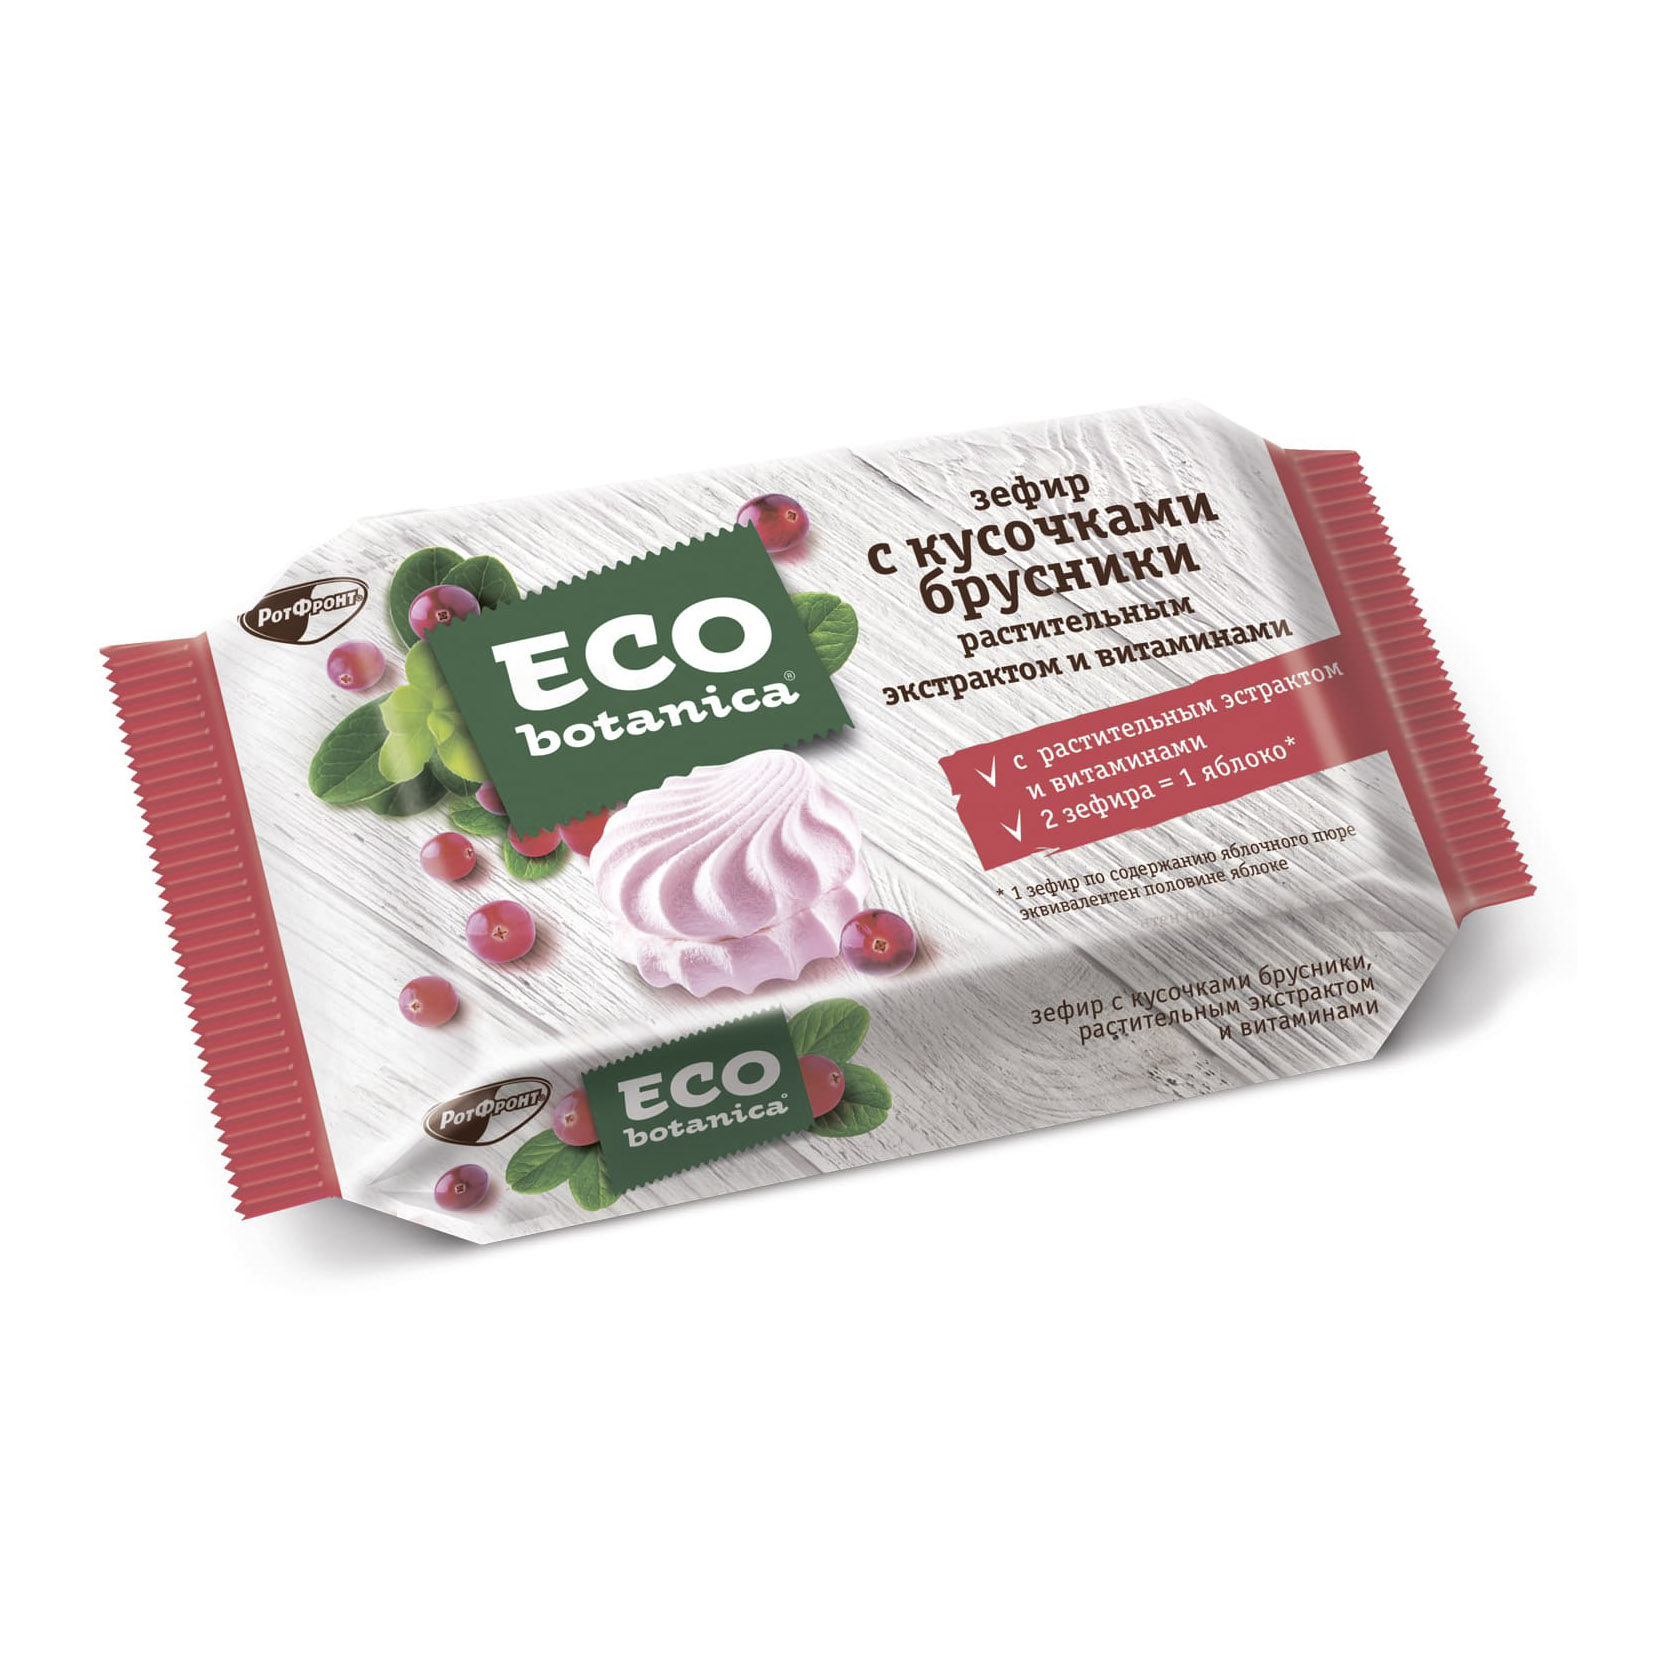 Зефир Eco Botanica с кусочками брусники, растительным экстрактом и витаминами 250 г самый сок крем для лица питательный вишневый зефир 50